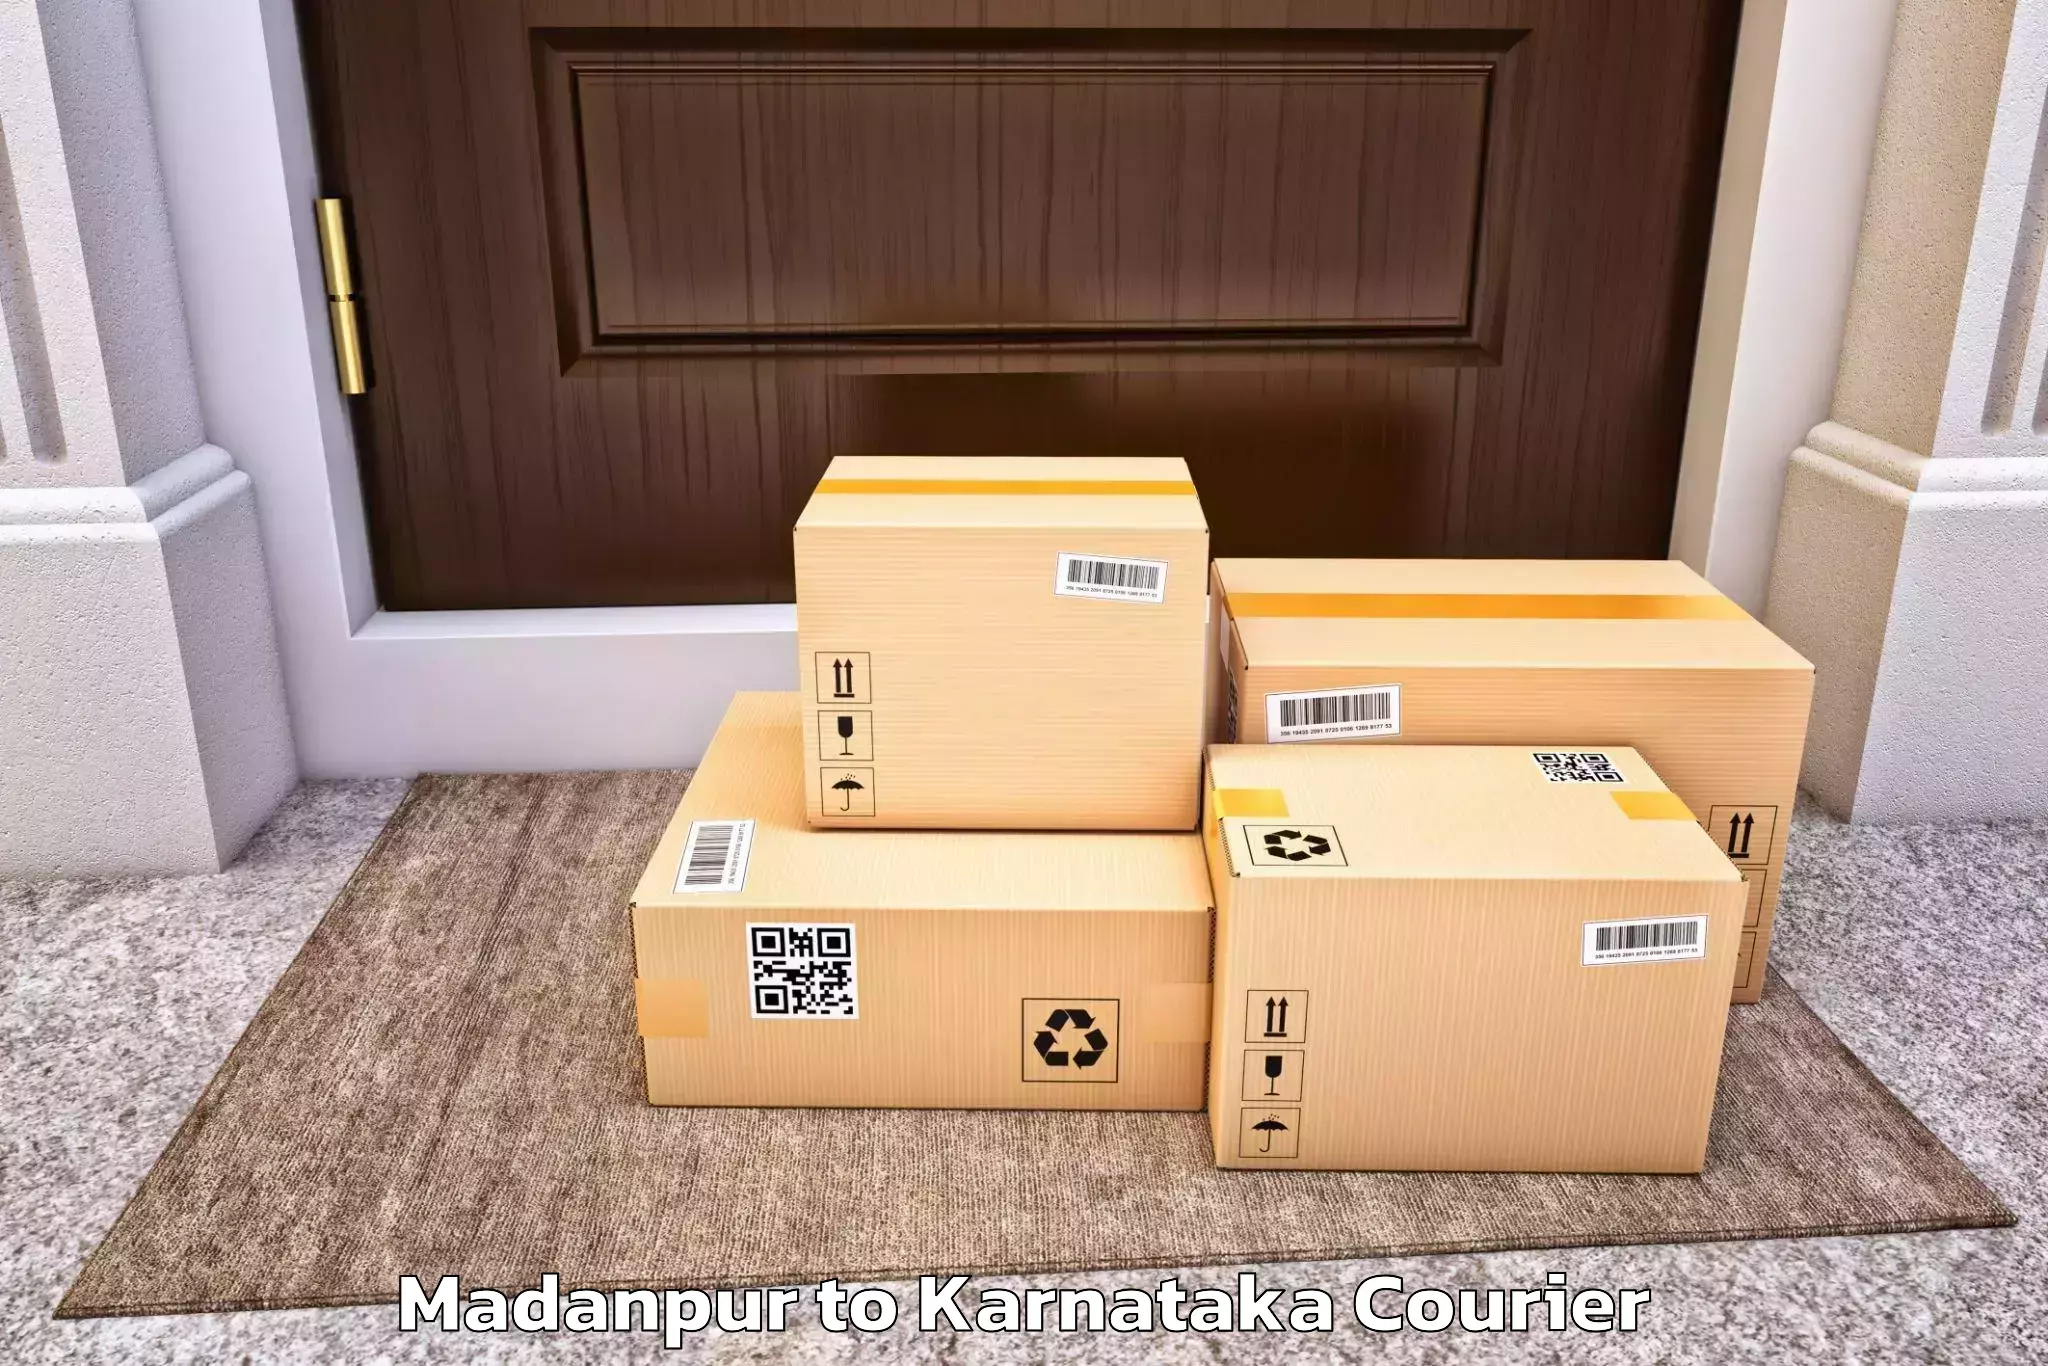 Residential furniture transport in Madanpur to Karnataka